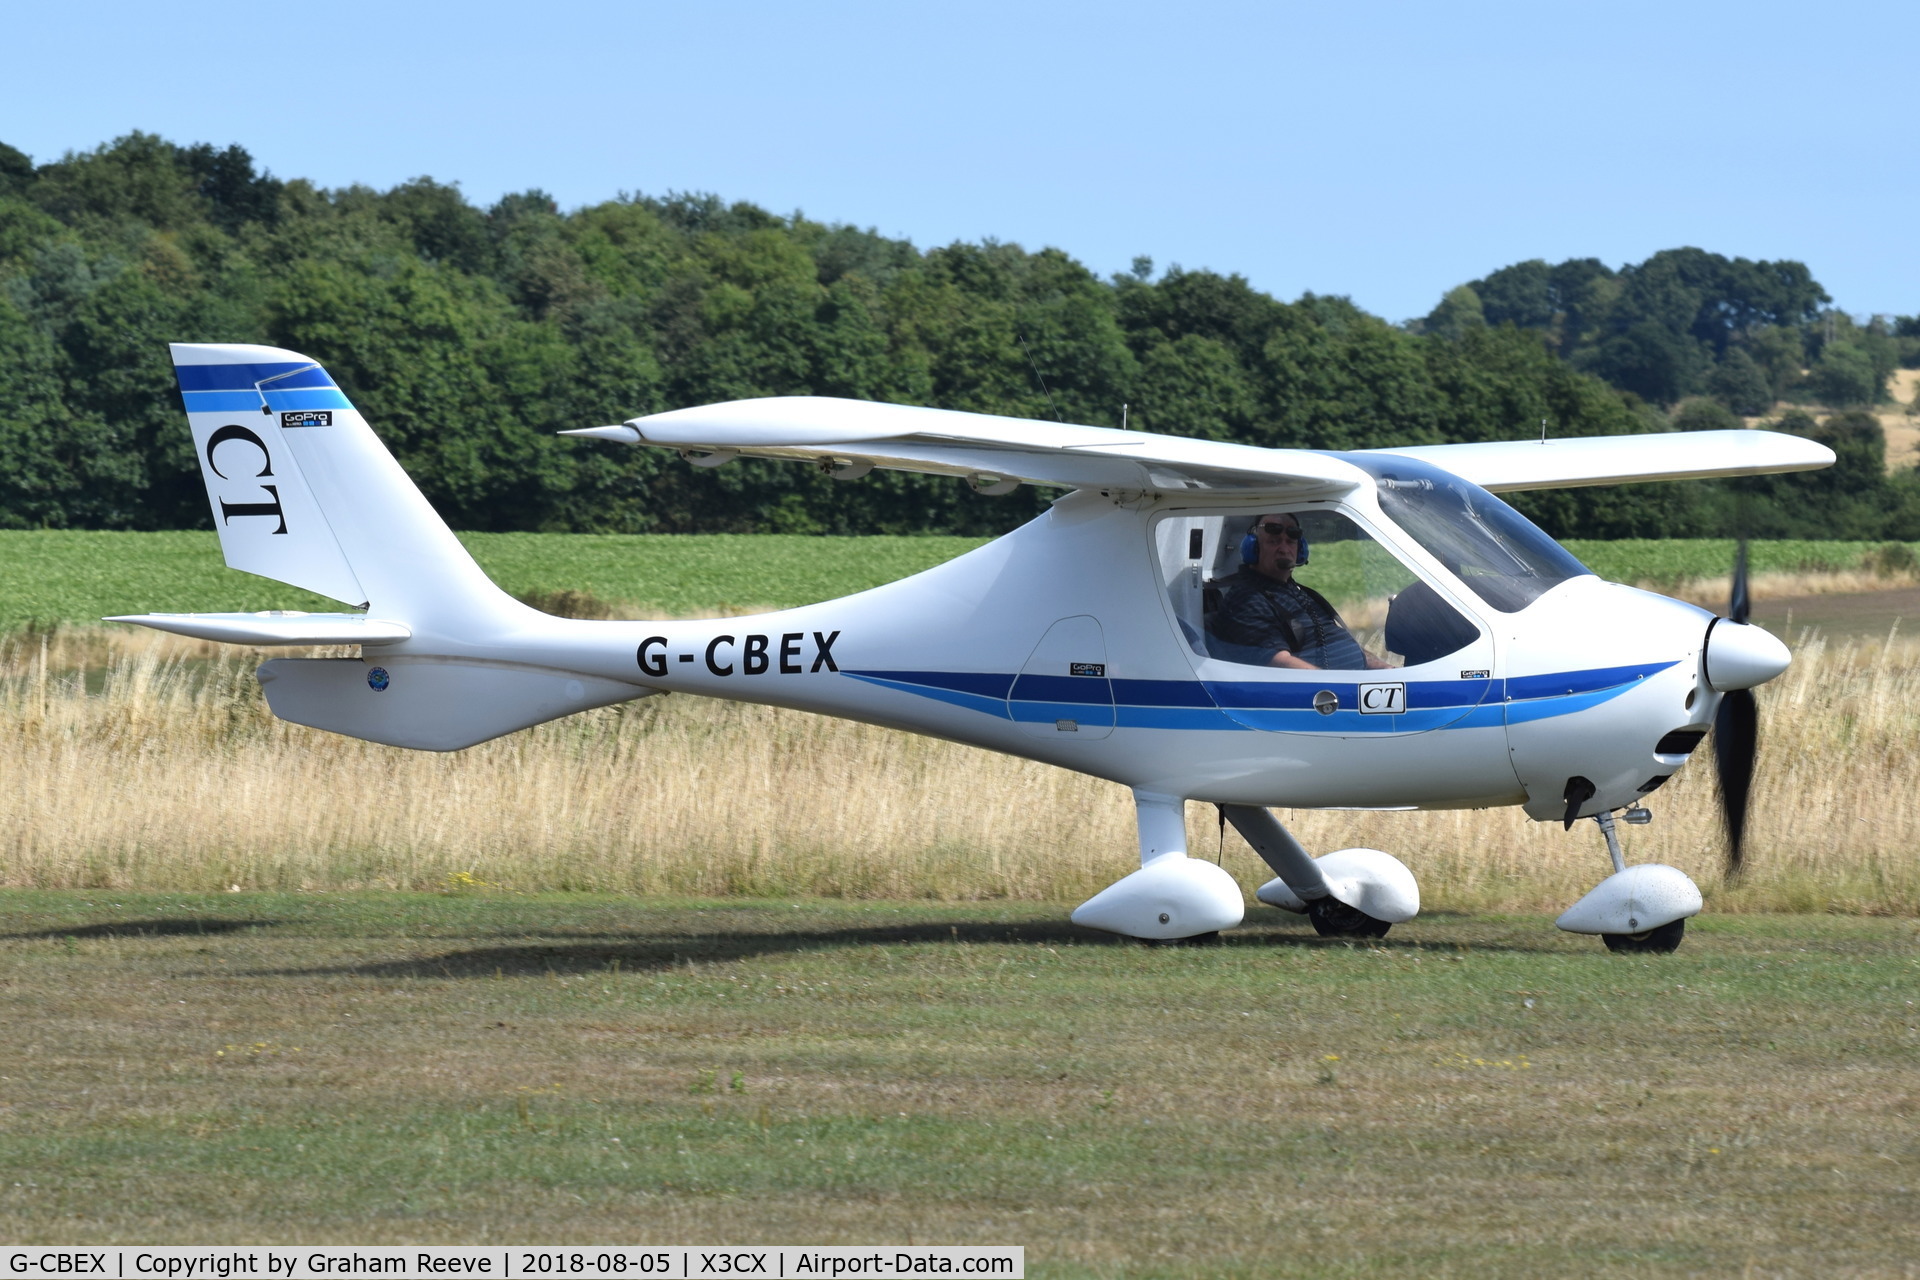 G-CBEX, 2001 Flight Design CT2K C/N 01.08.01.23, Just landed at Northrepps.